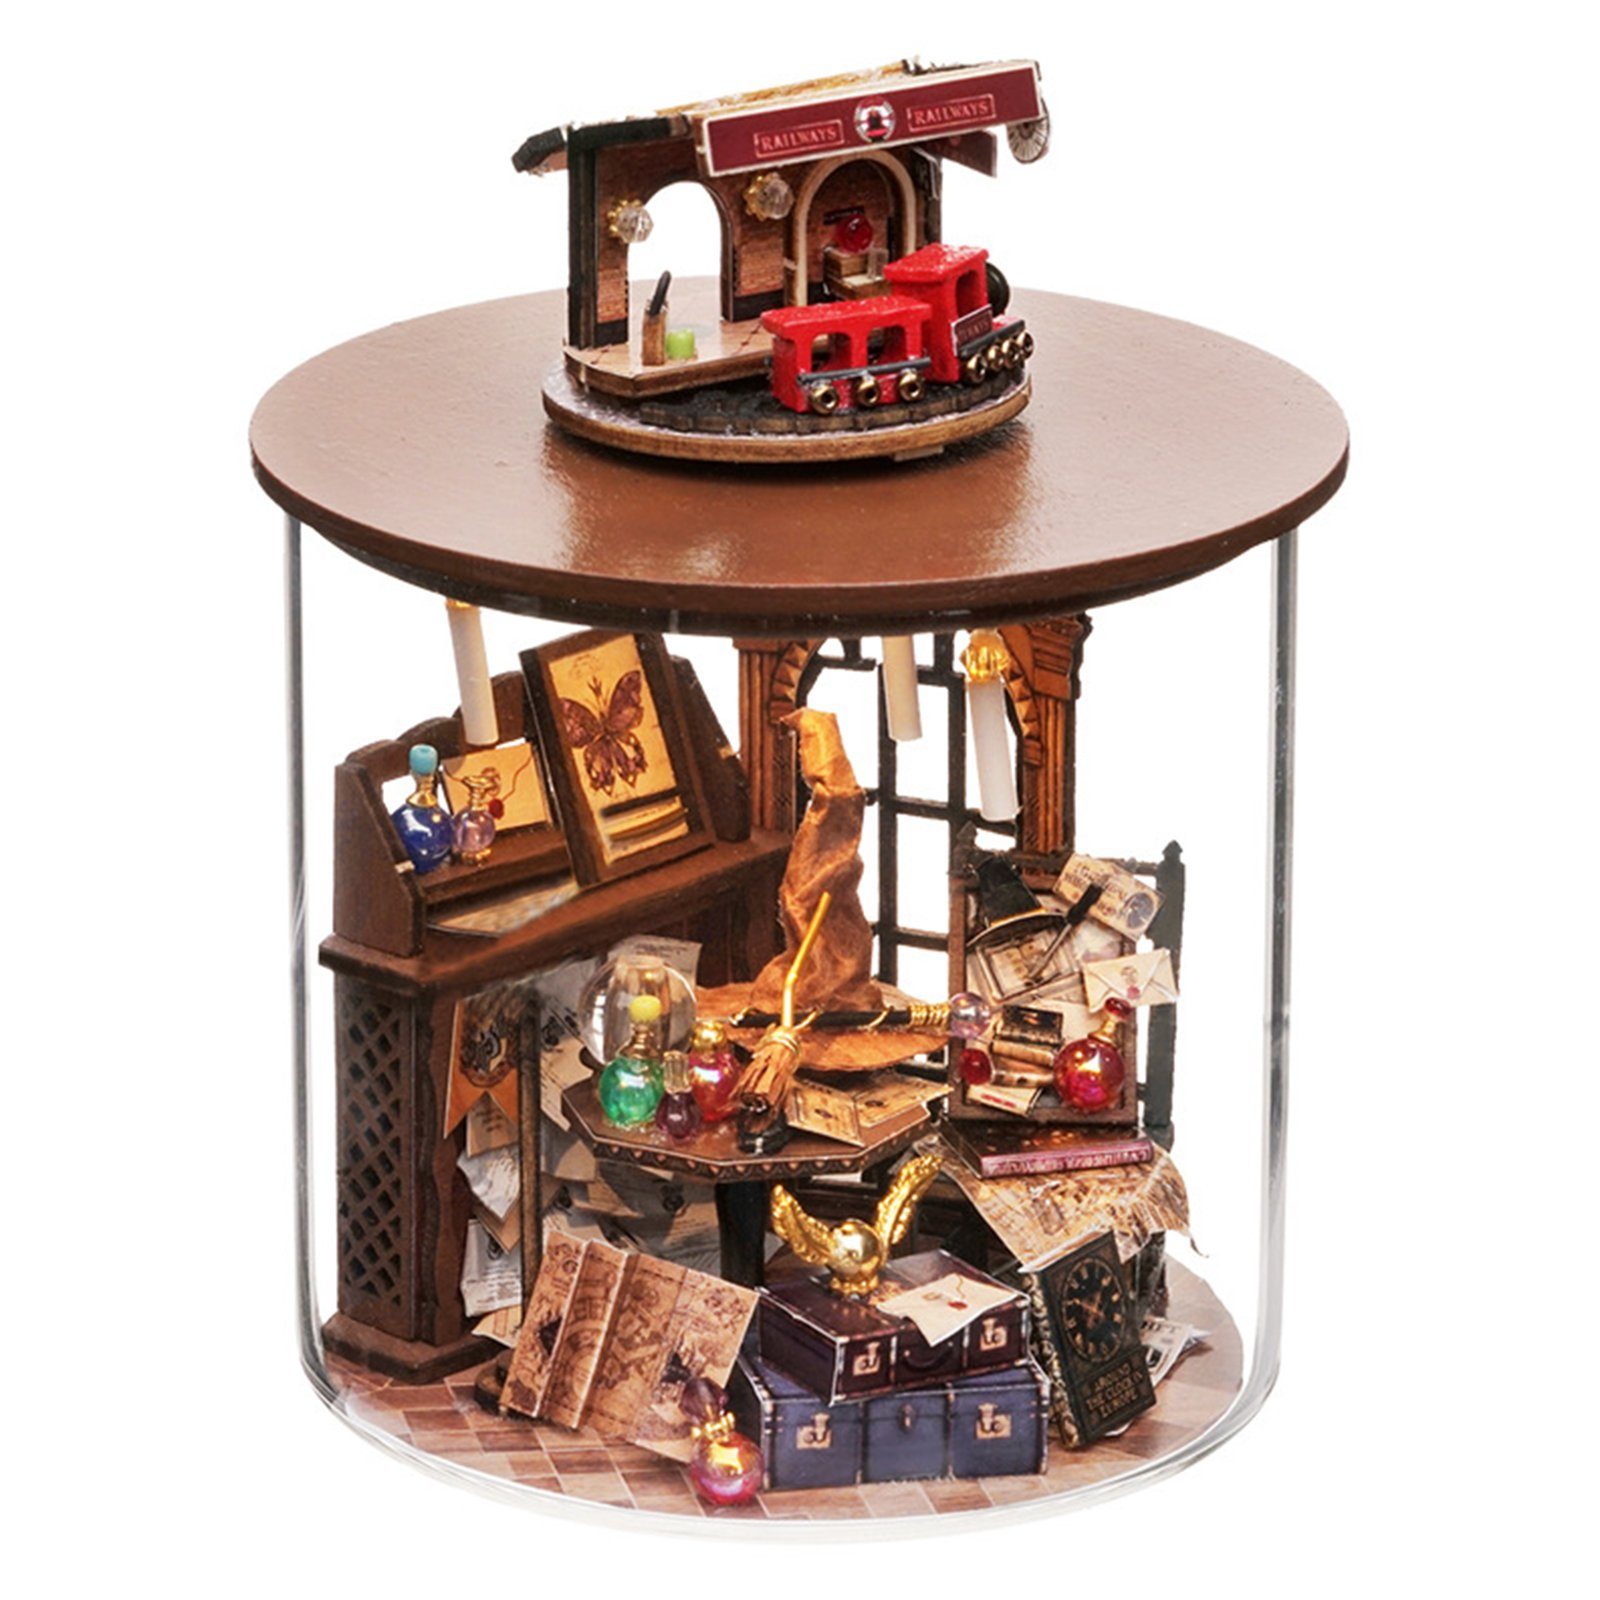 REDOM 3D-Puzzle Puppenhaus Miniatur Haus Holzbausatz Puppenhäuser Dekoration Möbeln, Puzzleteile, 3D Häuser Modellbausätze Geschenk Geburtstag Weihnachten DIY LED-Licht